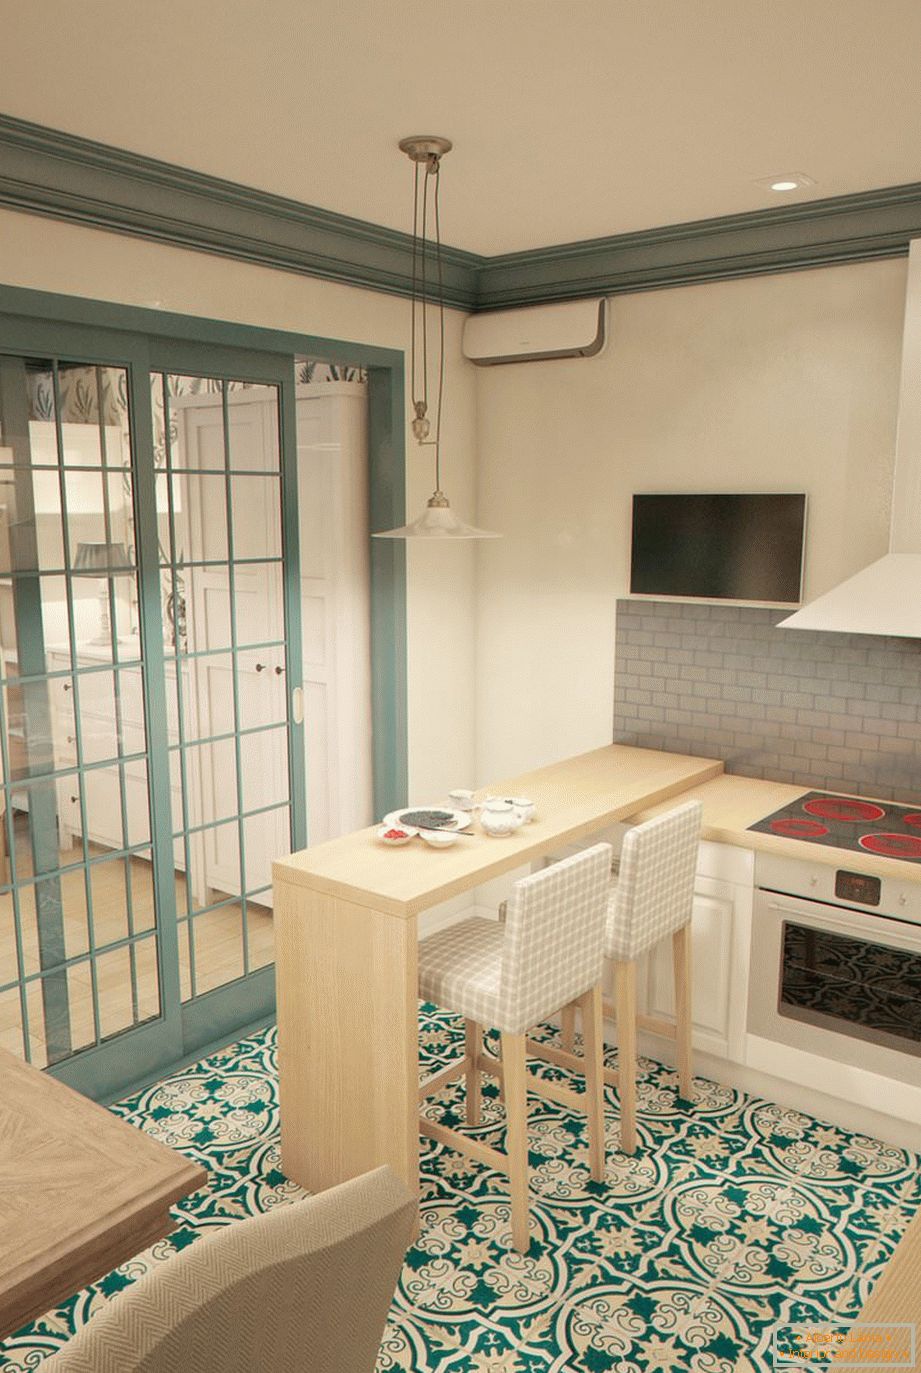 Bartheke in der Küche einer engen Studiowohnung in Russland